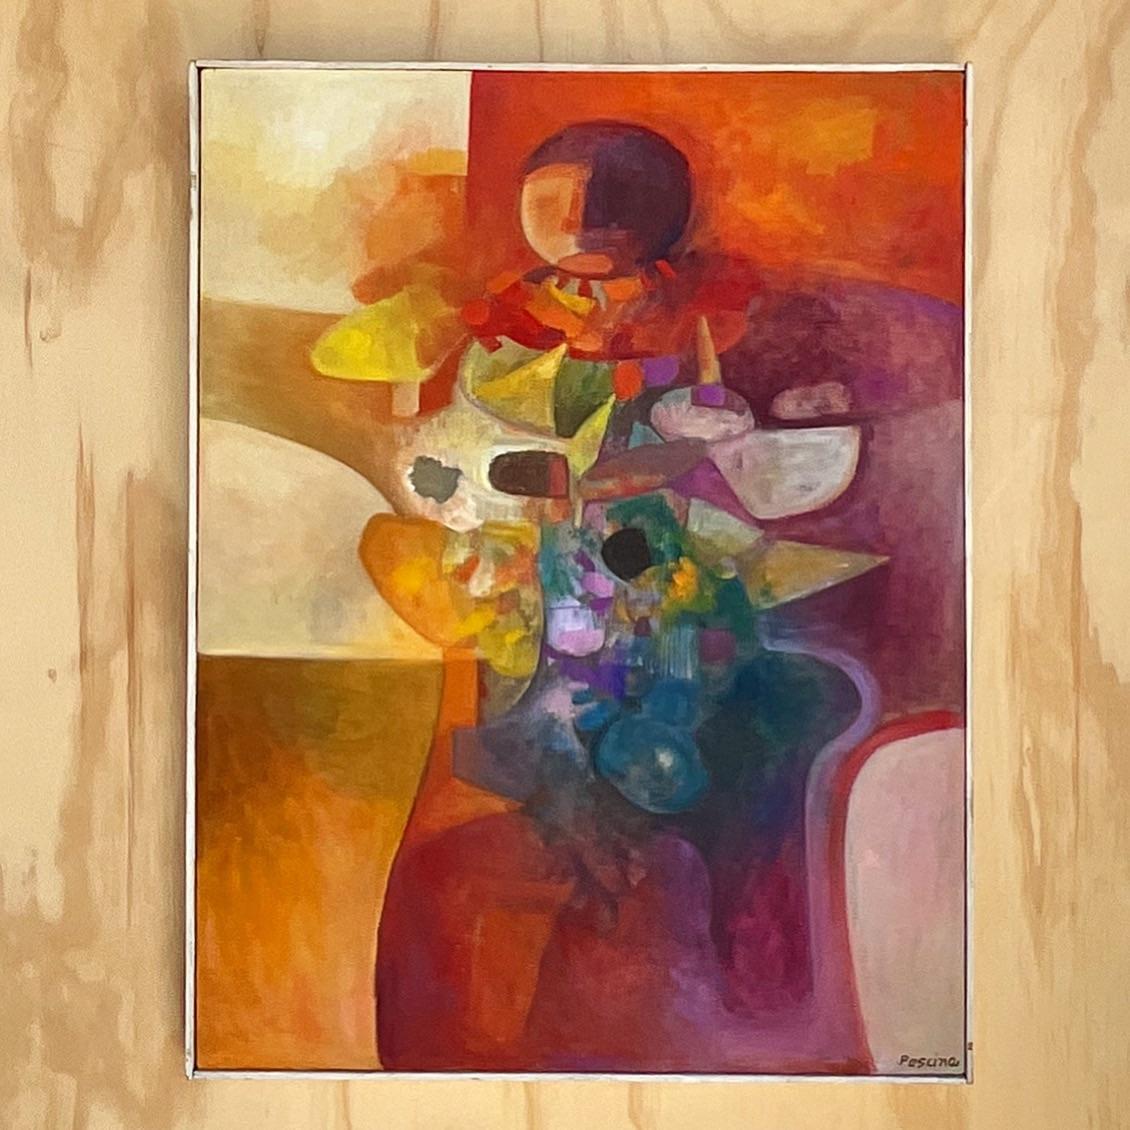 Incroyable peinture à l'huile originale cubiste abstraite des années 70. Signé par l'artiste Pescina. De magnifiques couleurs aux tons de joyaux dominent cette composition brillante. Acquis d'une succession de Palm Beach